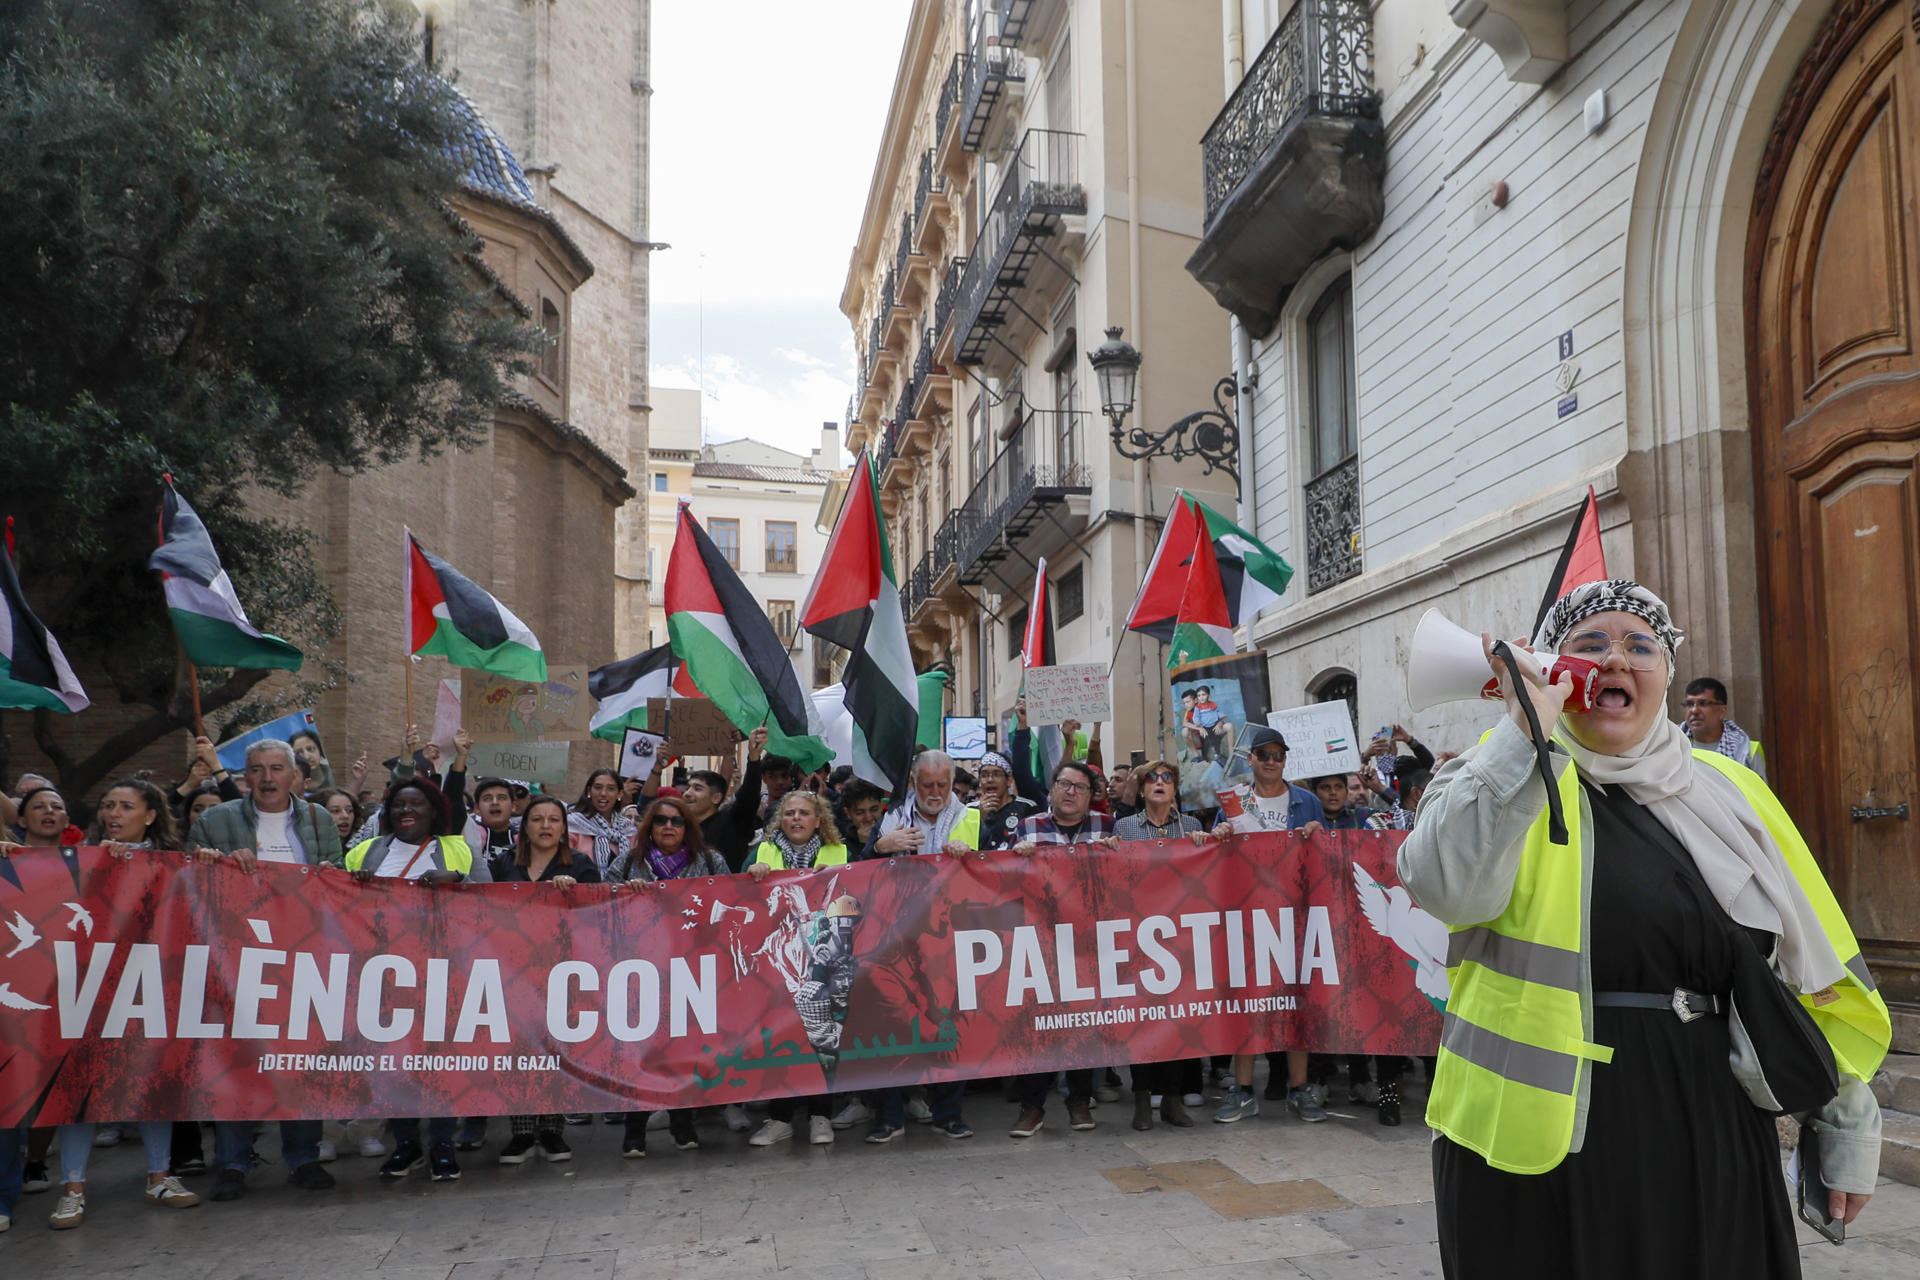 Una manifestación ha recorrido este sábado el centro de València para reclamar el "cese inmediato" de la violencia en Palestina y que se reconozcan los derechos fundamentales de ese pueblo, así como que se detenga el sufrimiento en la Franja de Gaza. EFE/Juan Carlos Cárdenas
